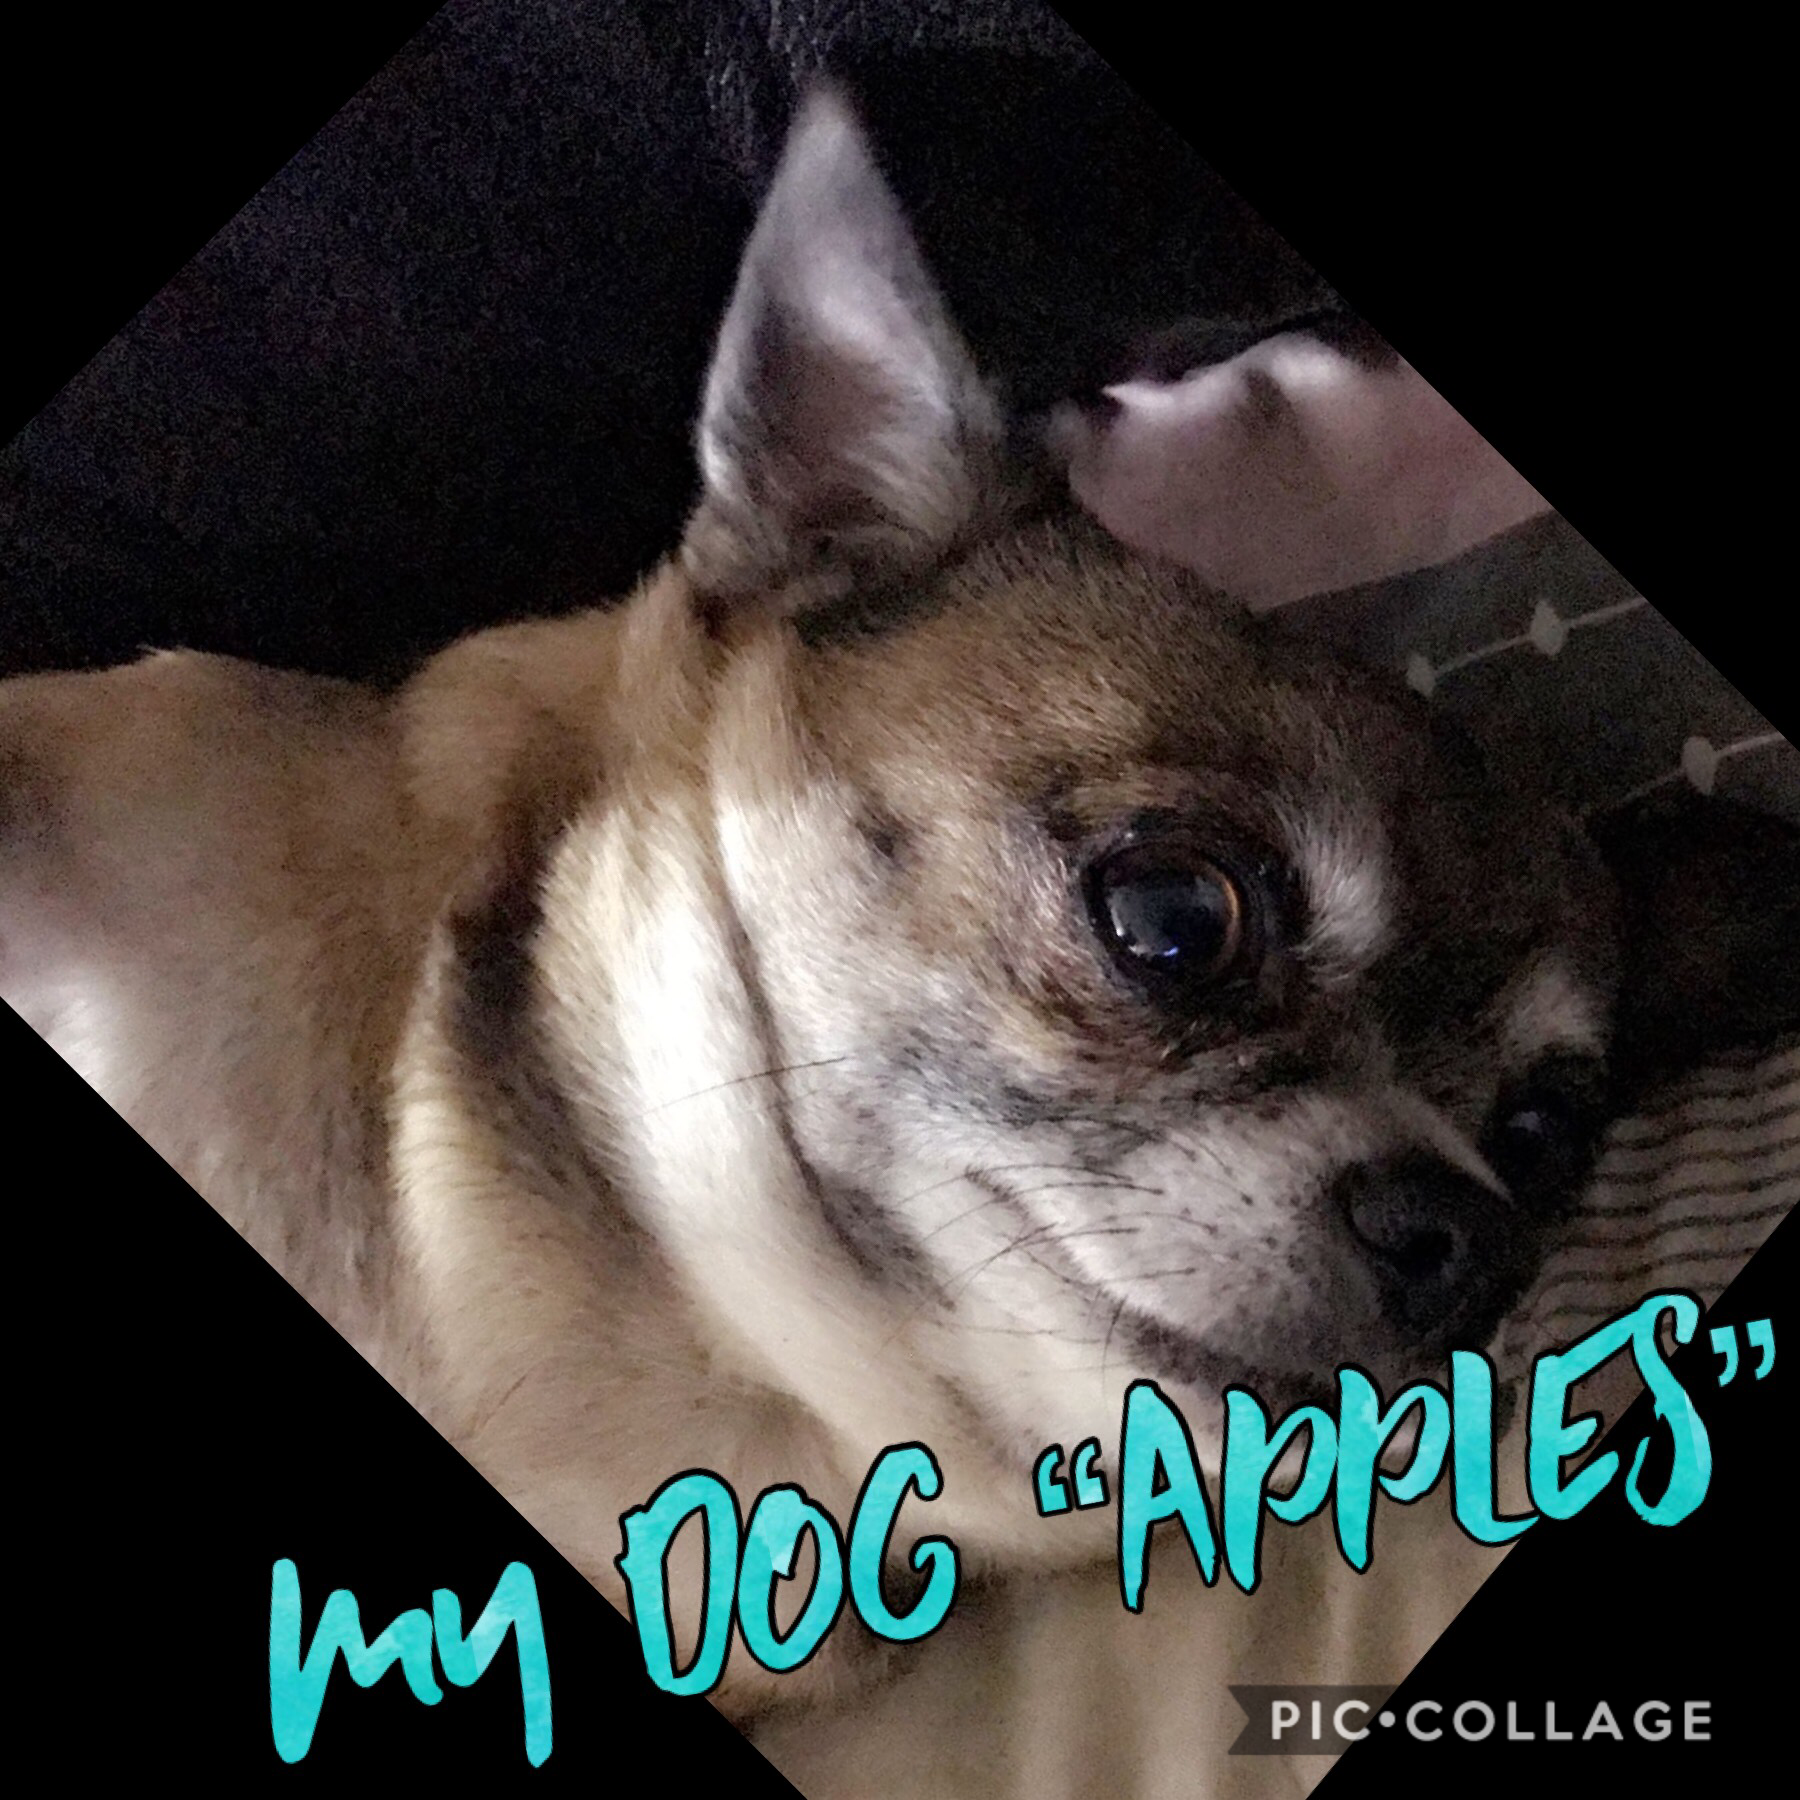 My dog go apples